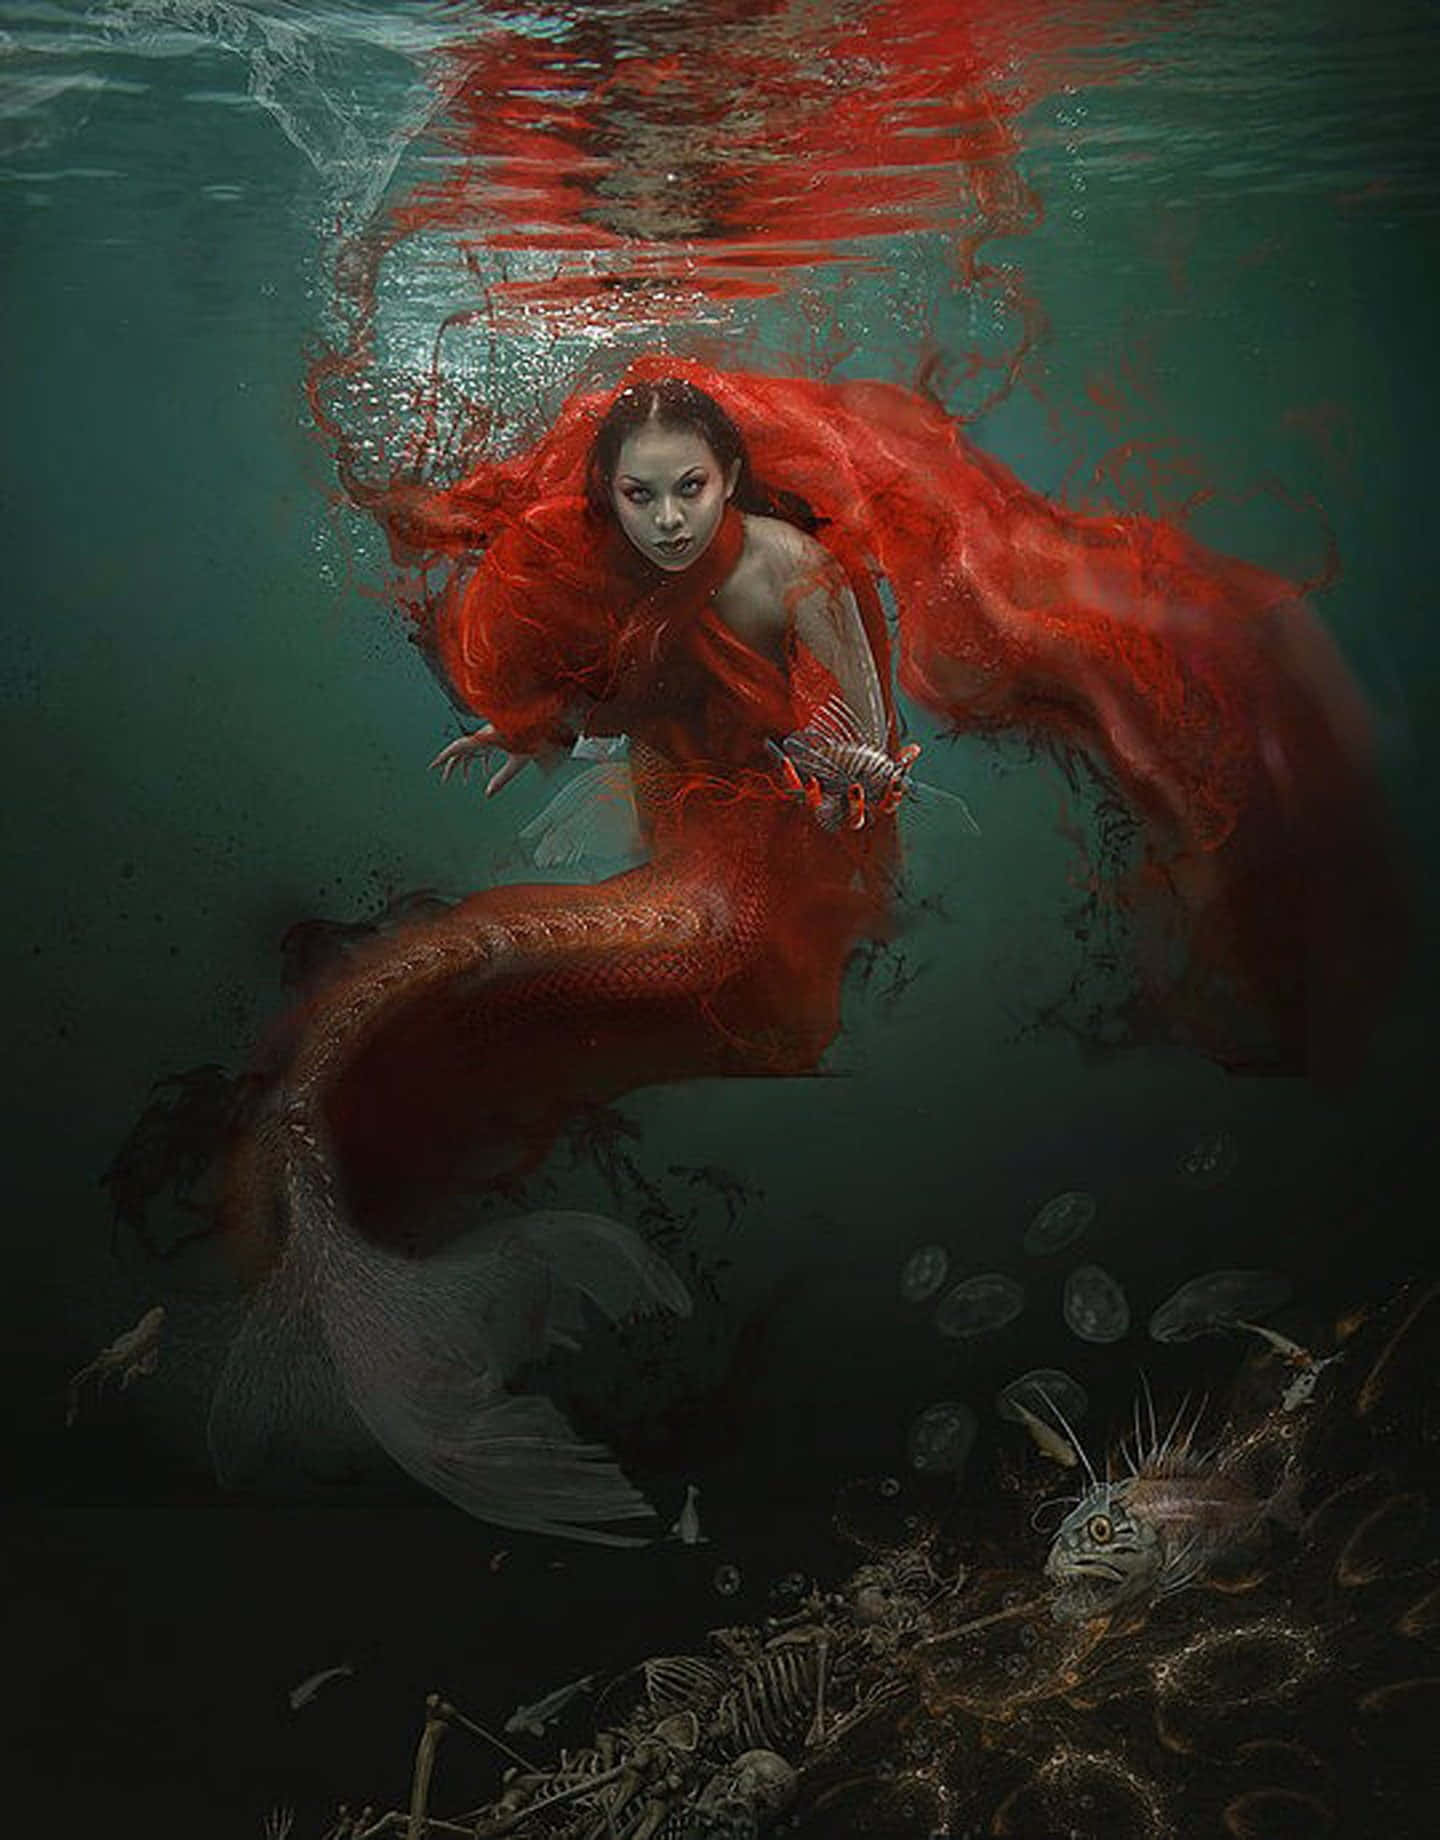 Arteimmagine Di Una Sirena Rossa A Colori